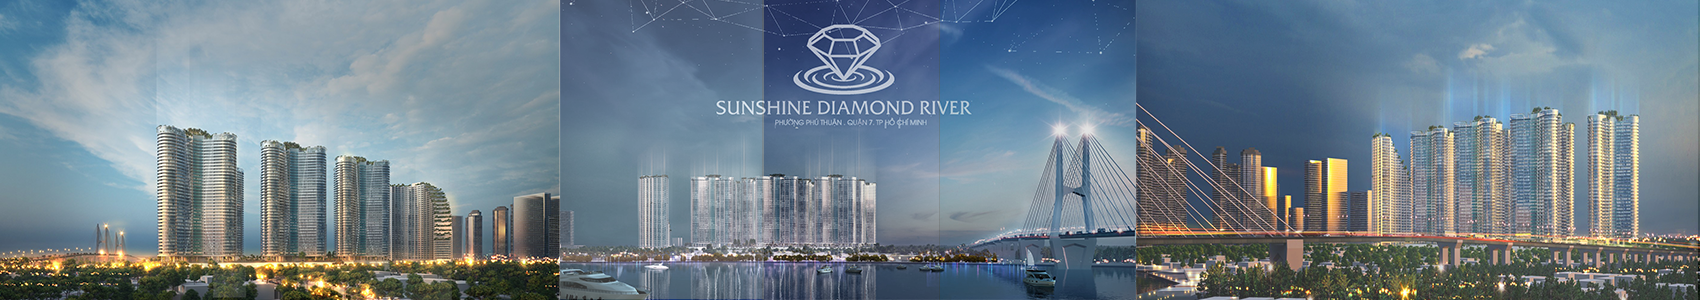 Phối cảnh dự án căn hộ chung cư sunshine diamond river quận 7